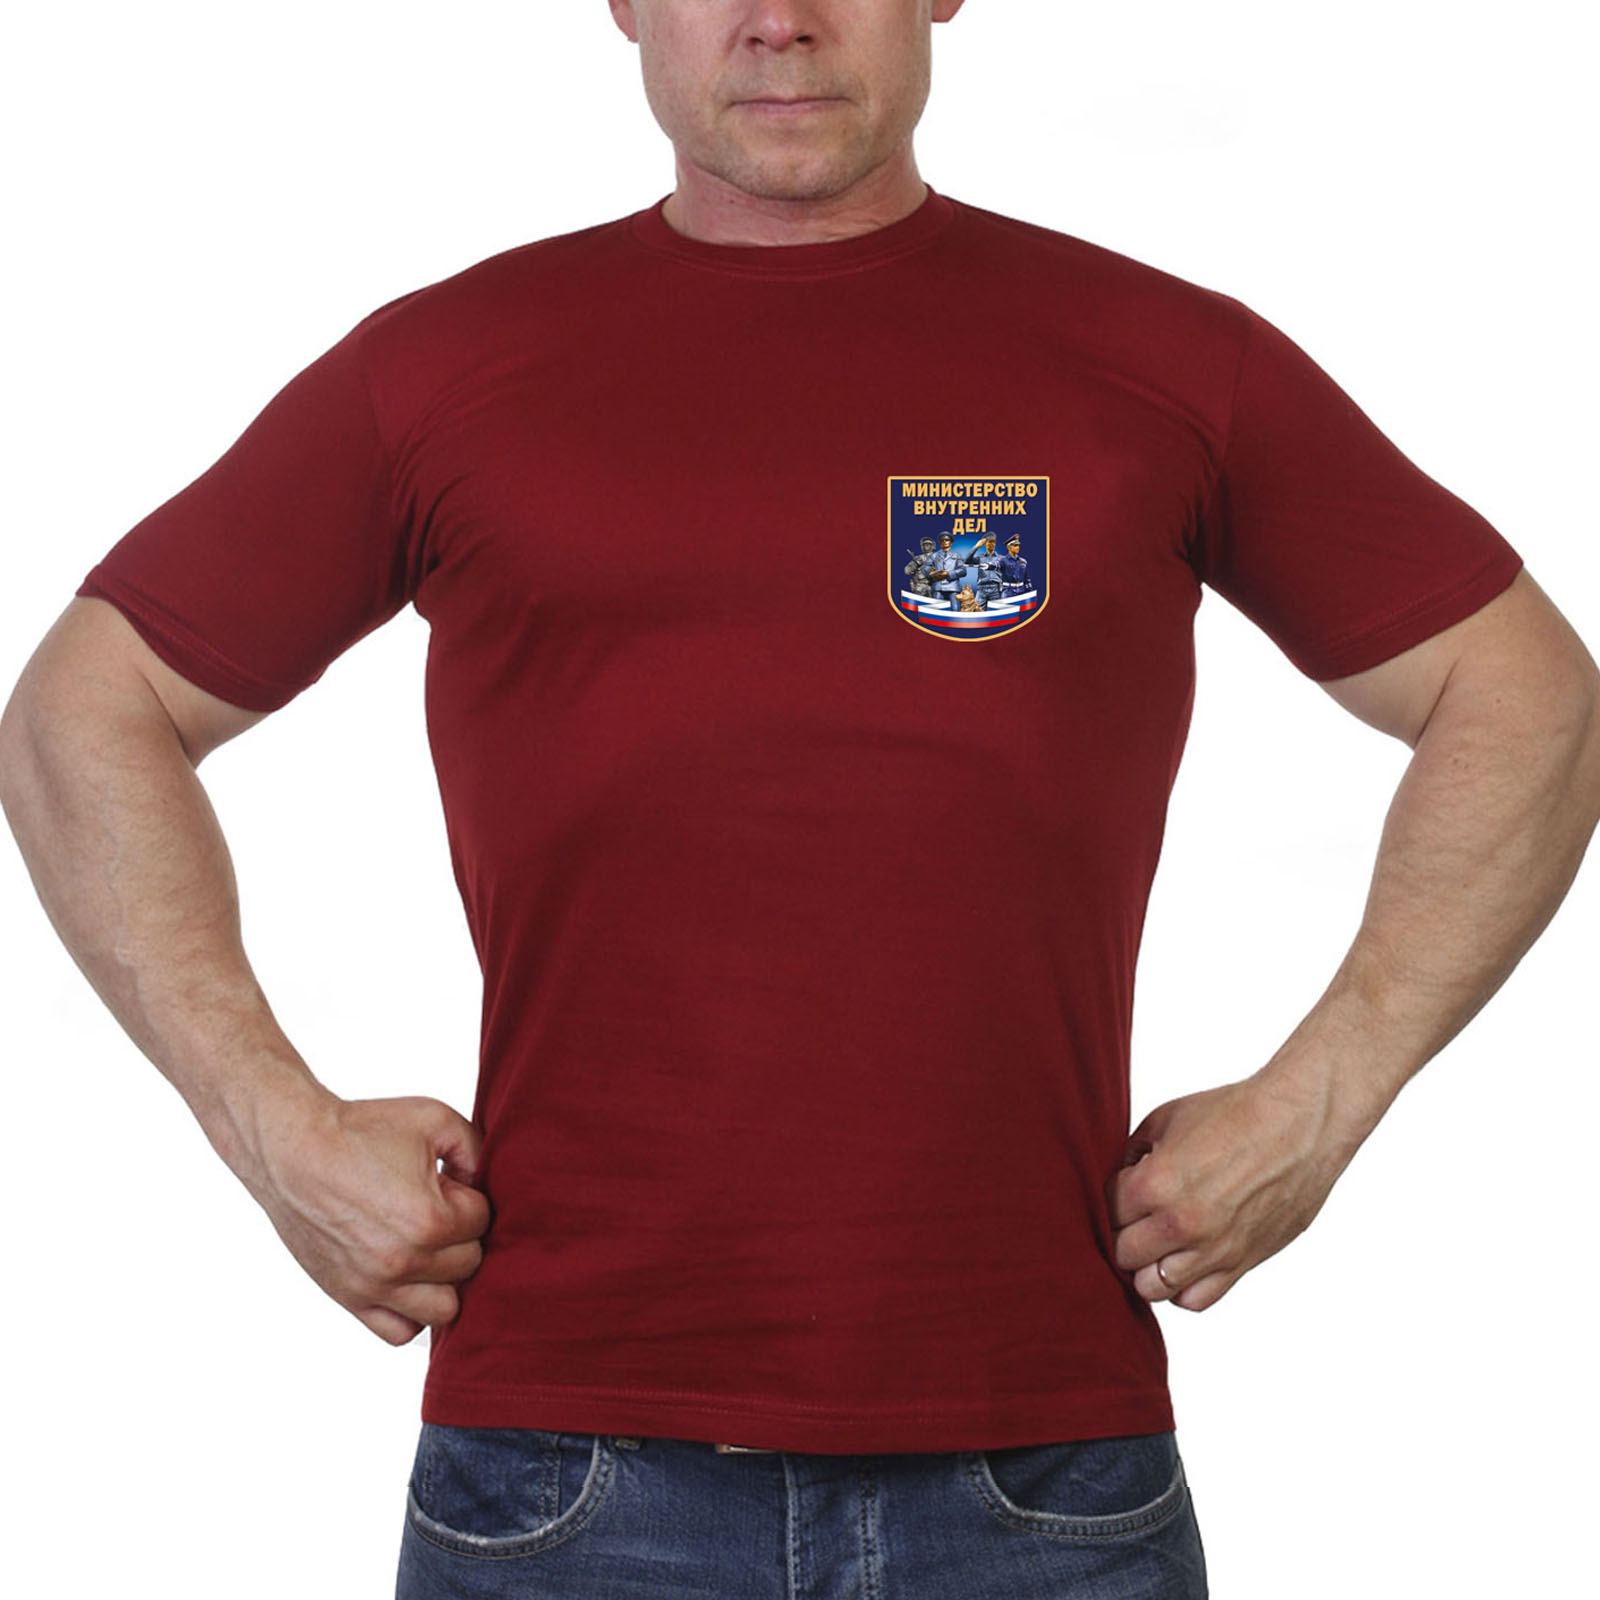 Краповая футболка с термотрансфером "Министерство Внутренних Дел"